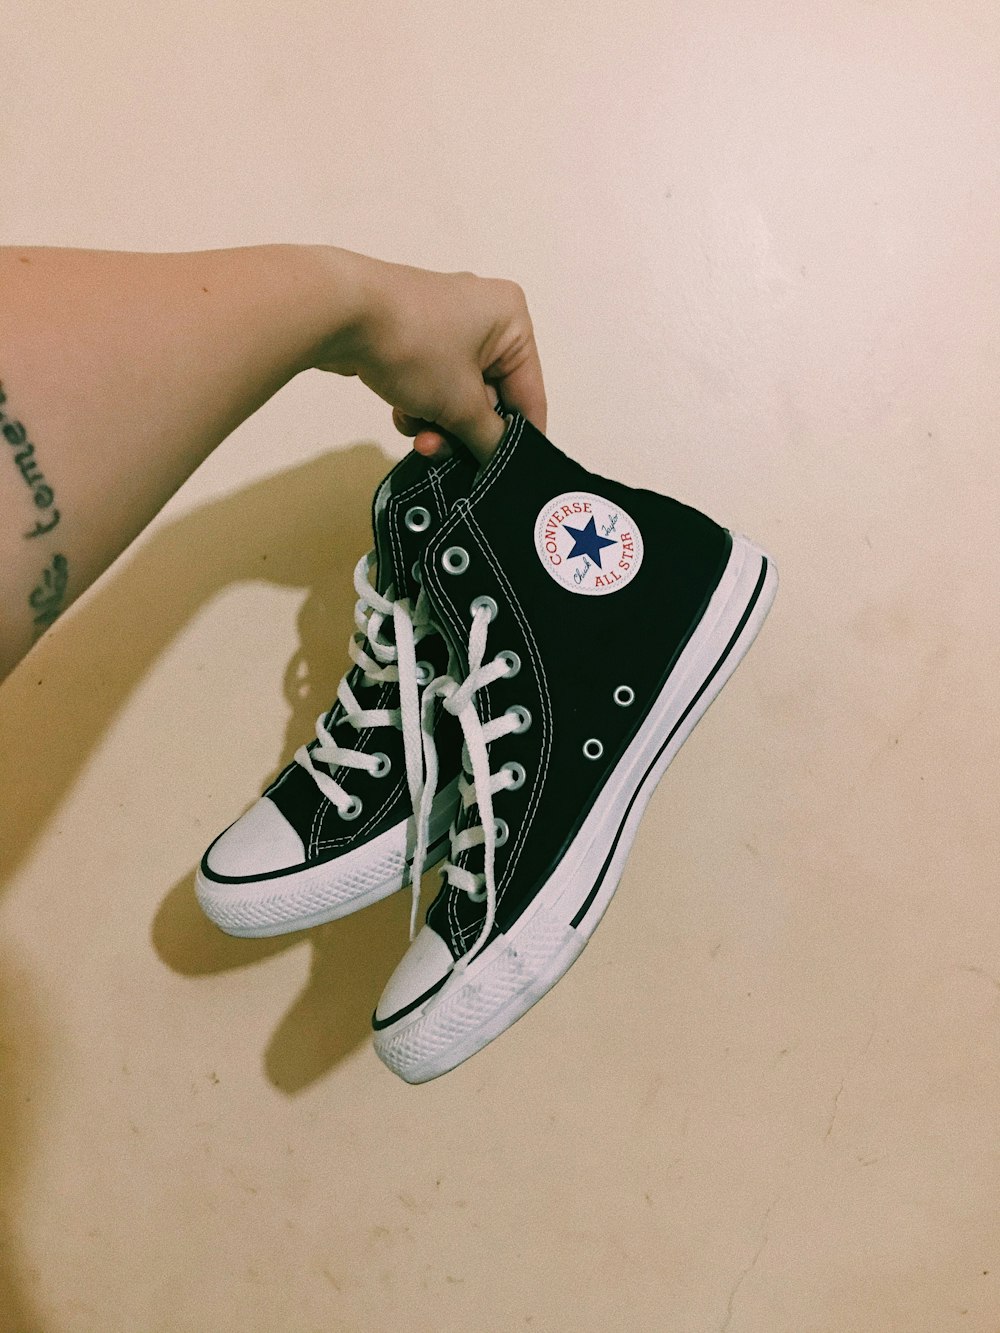 Foto persona con zapatillas altas converse all star negras – Imagen Allstar  gratis en Unsplash